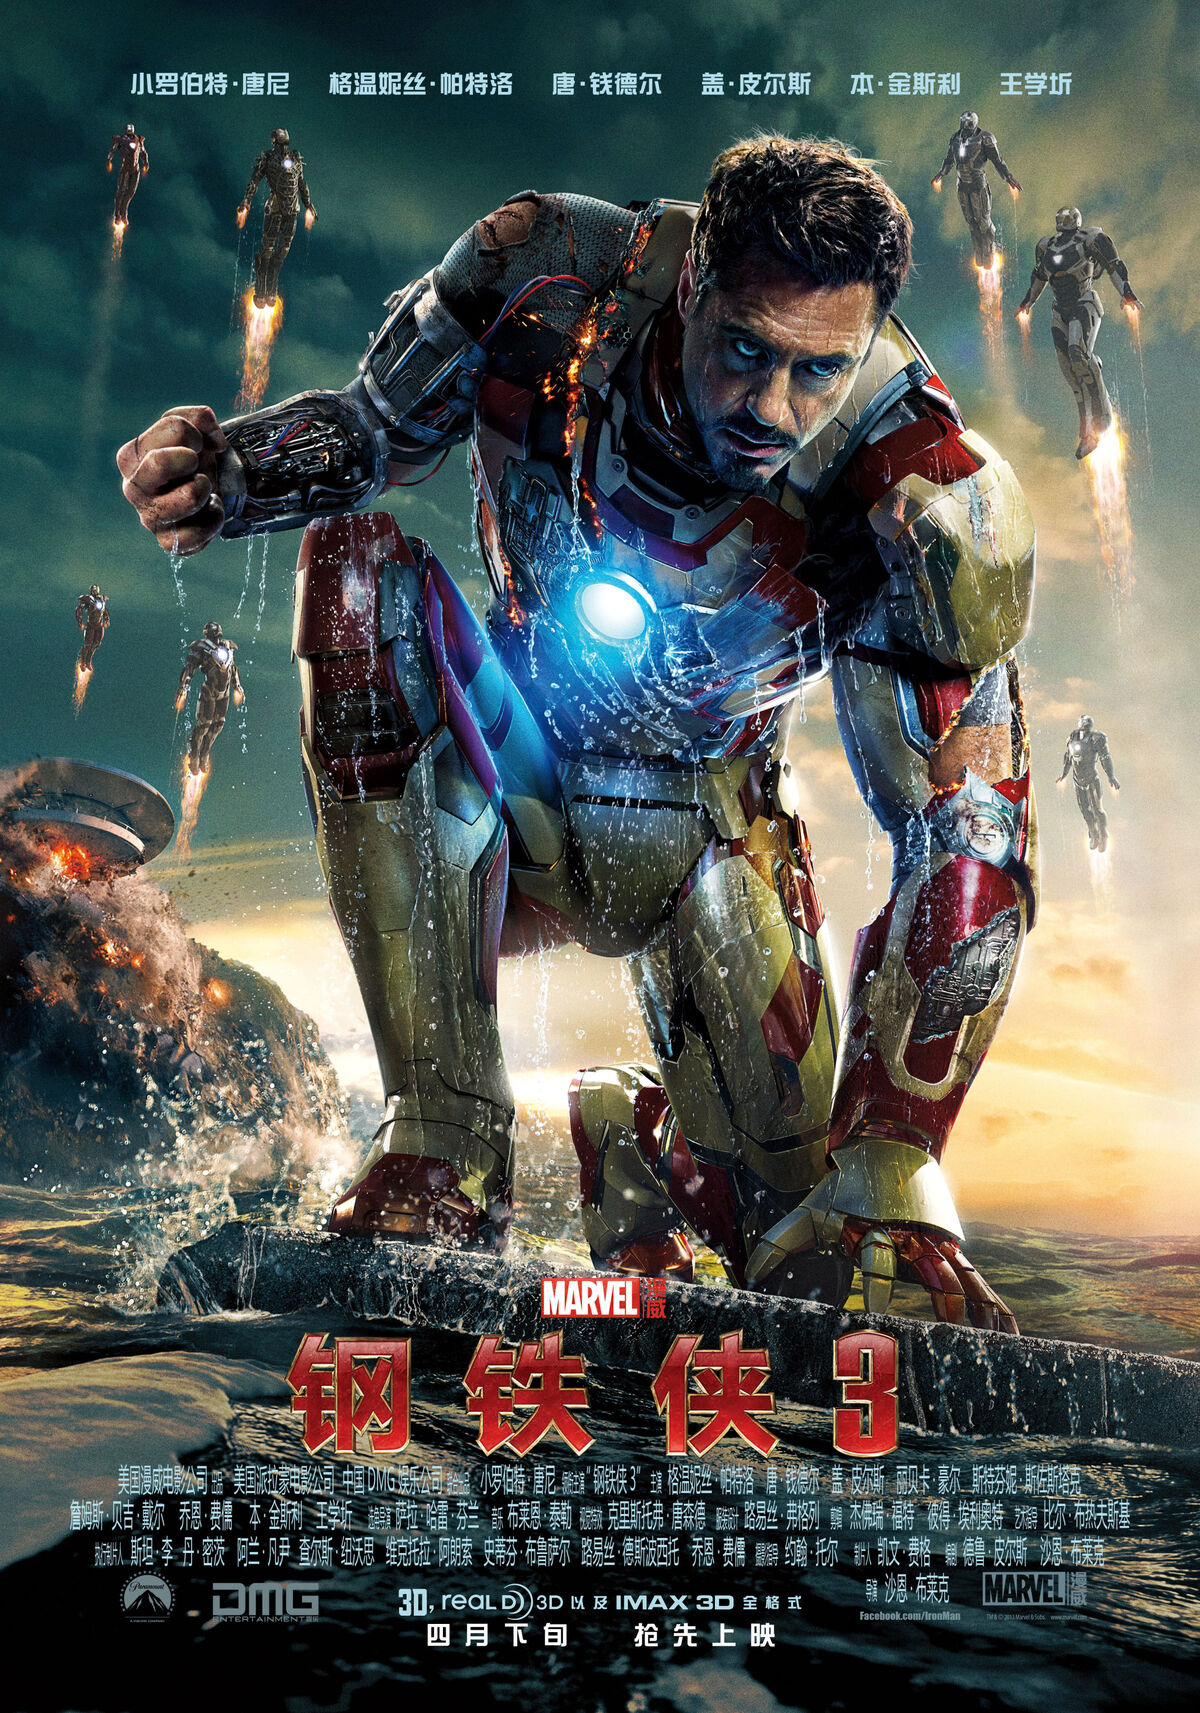 壁纸图片-Iron Man 3(钢铁侠官方全套壁纸)高清版-东坡下载